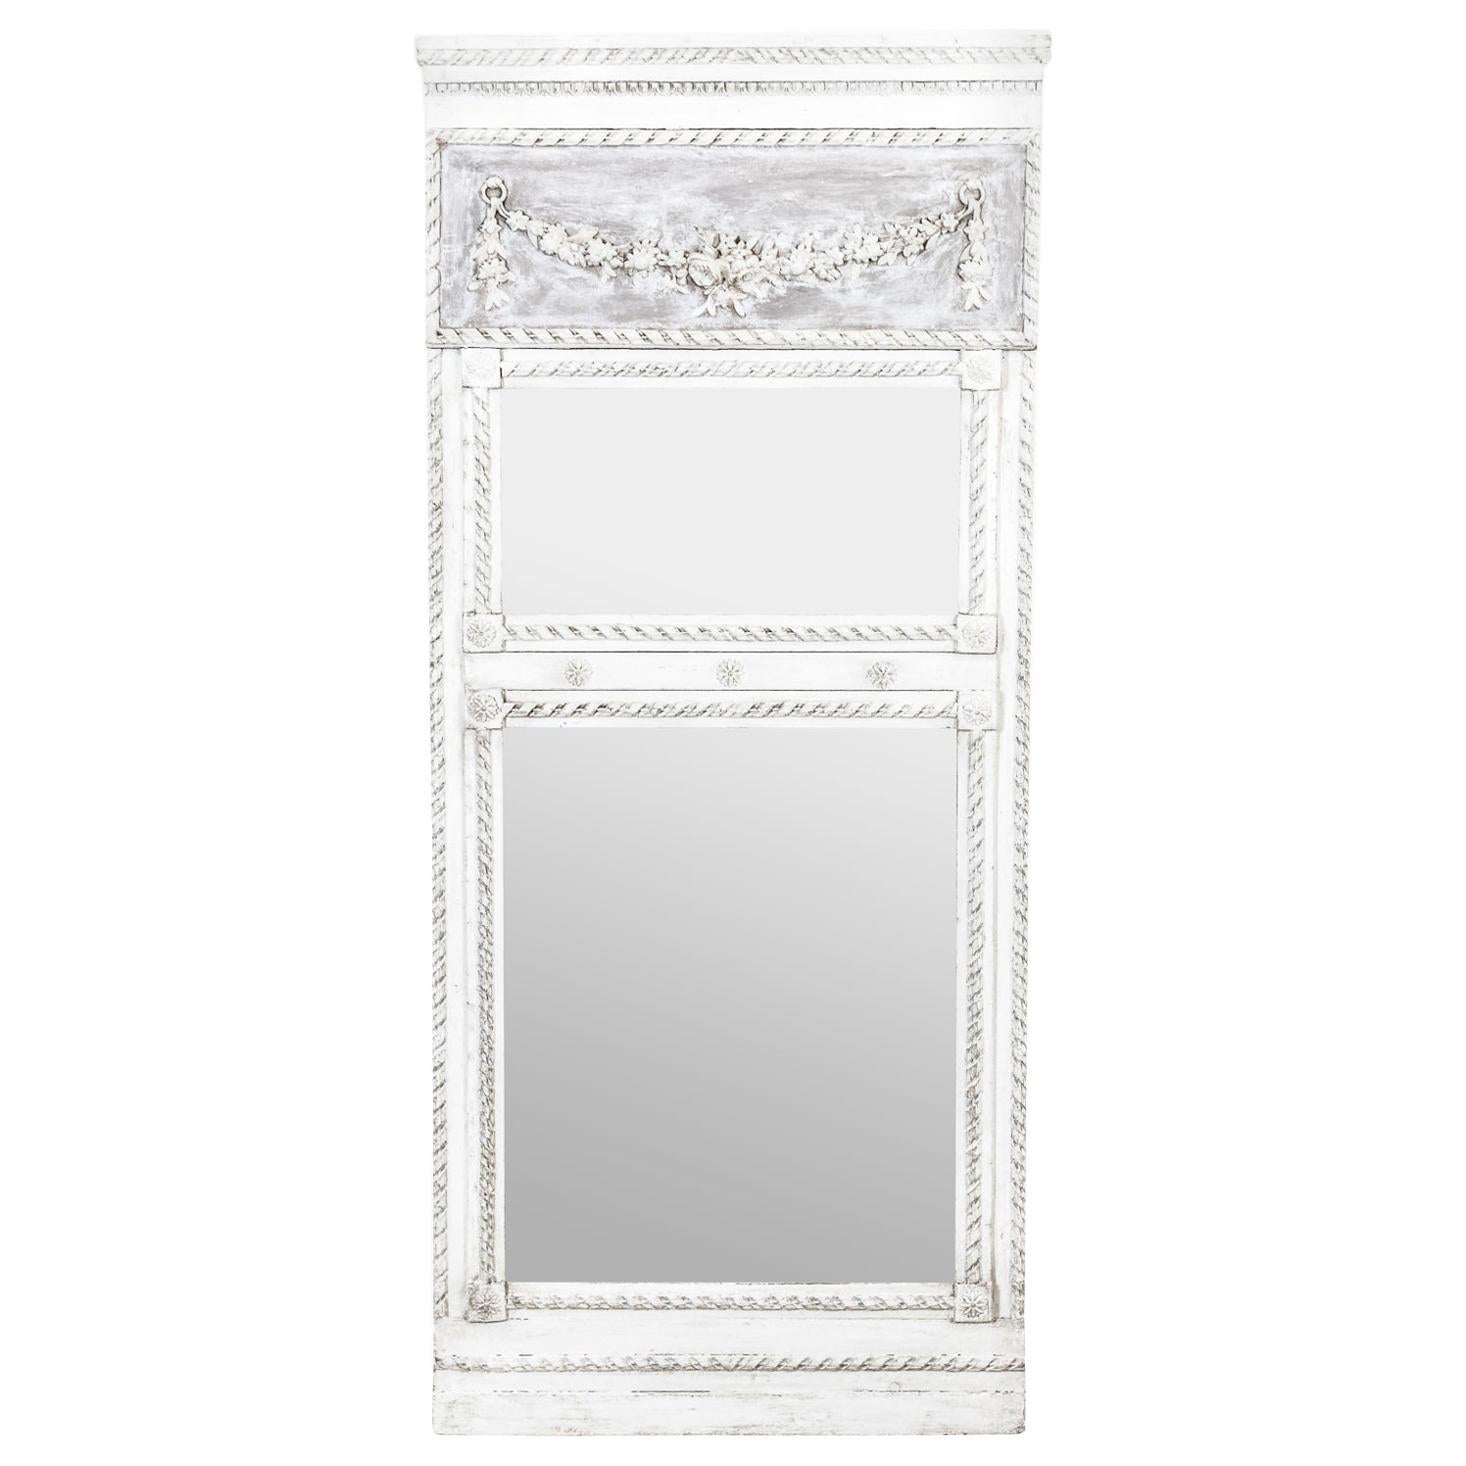 Louis XVI Style Trumeau Mirror